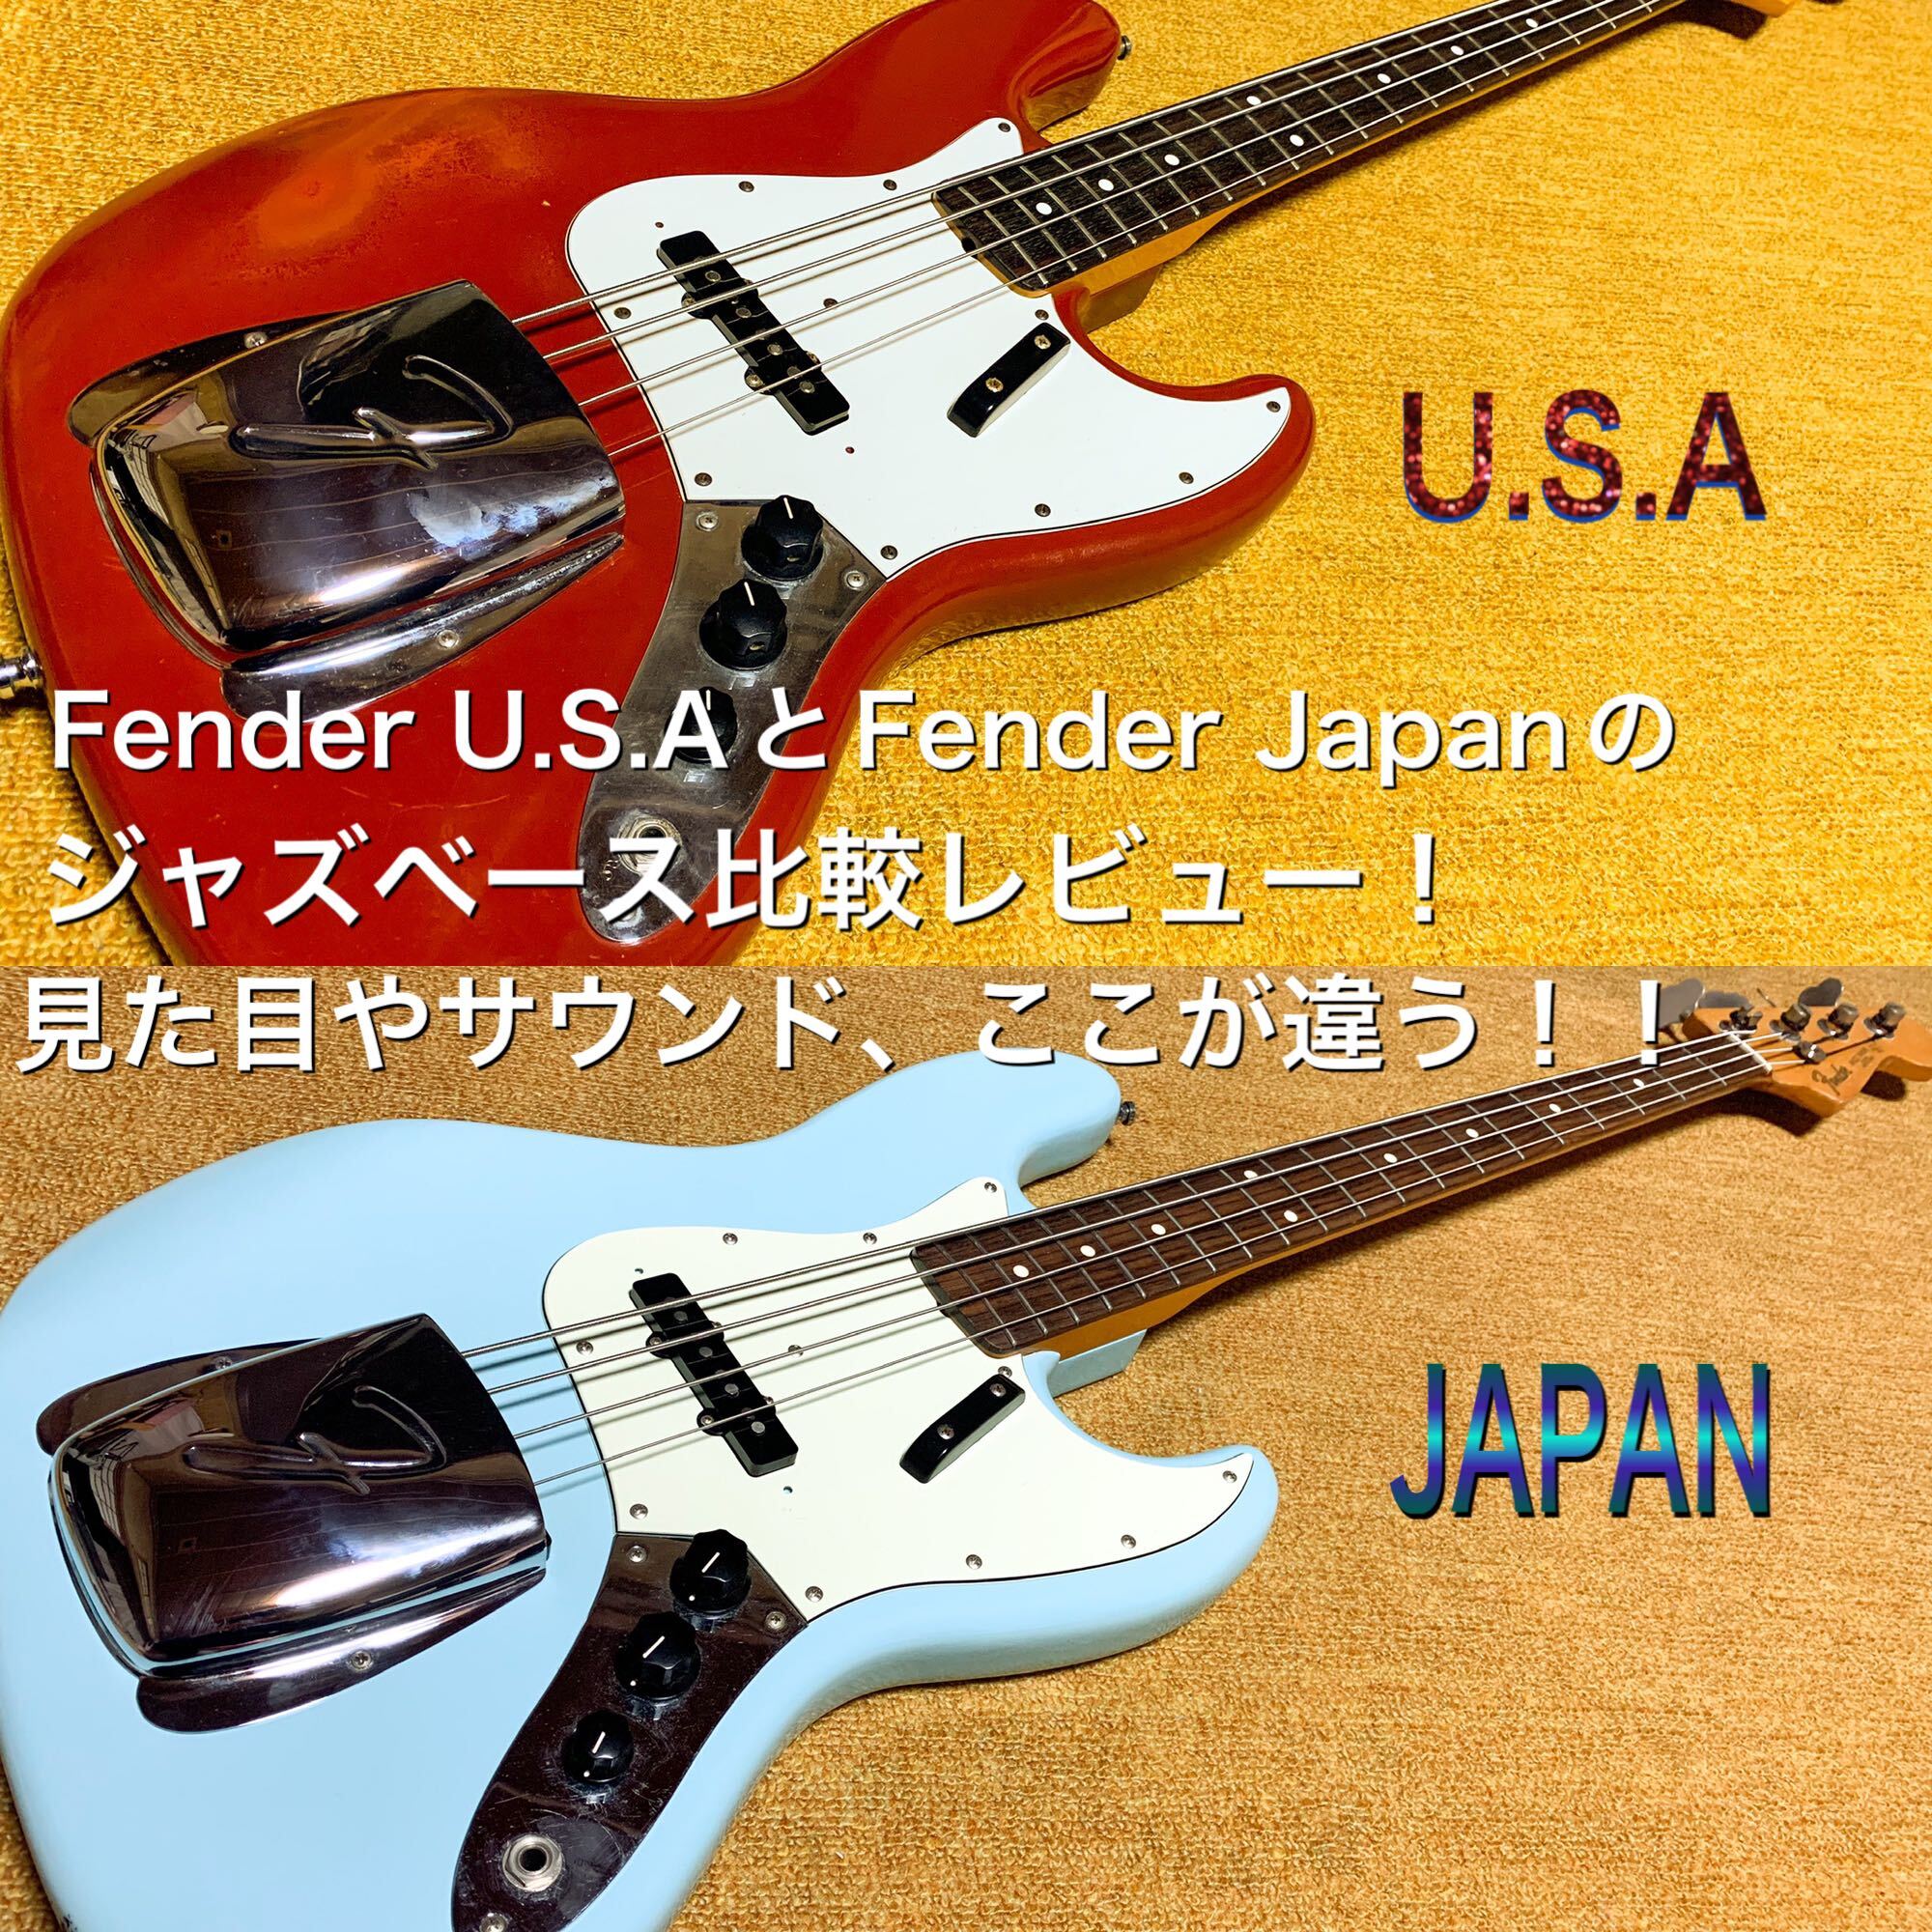 アウトレット品 FENDER JAPAN JAZZ BASS フェンダー ジャパン ジャス